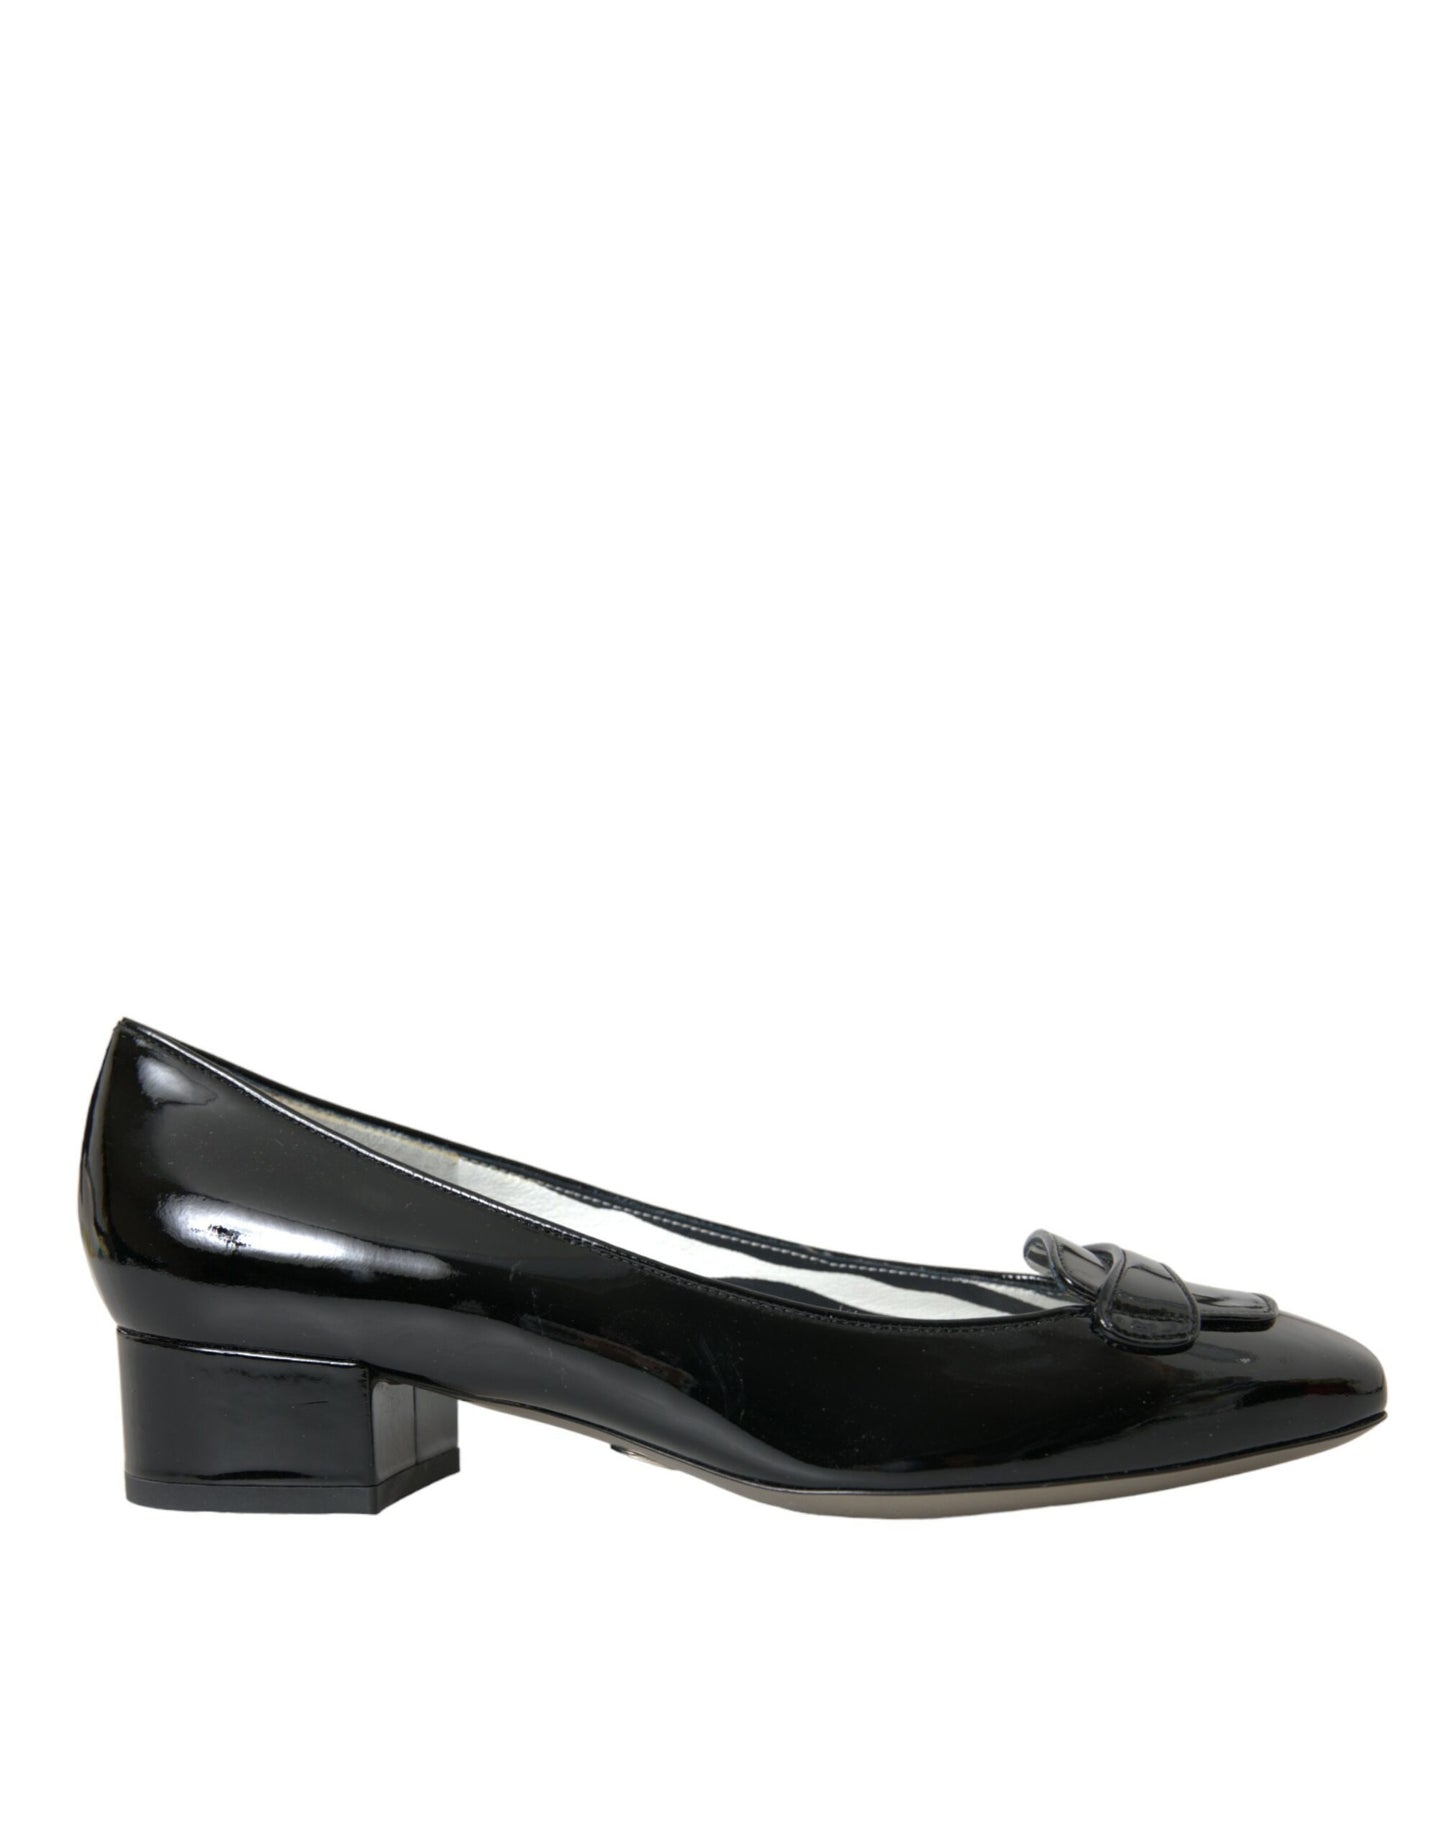 حذاء دولتشي آند غابانا ذو الكعب العالي المصنوع من الجلد باللون الأسود